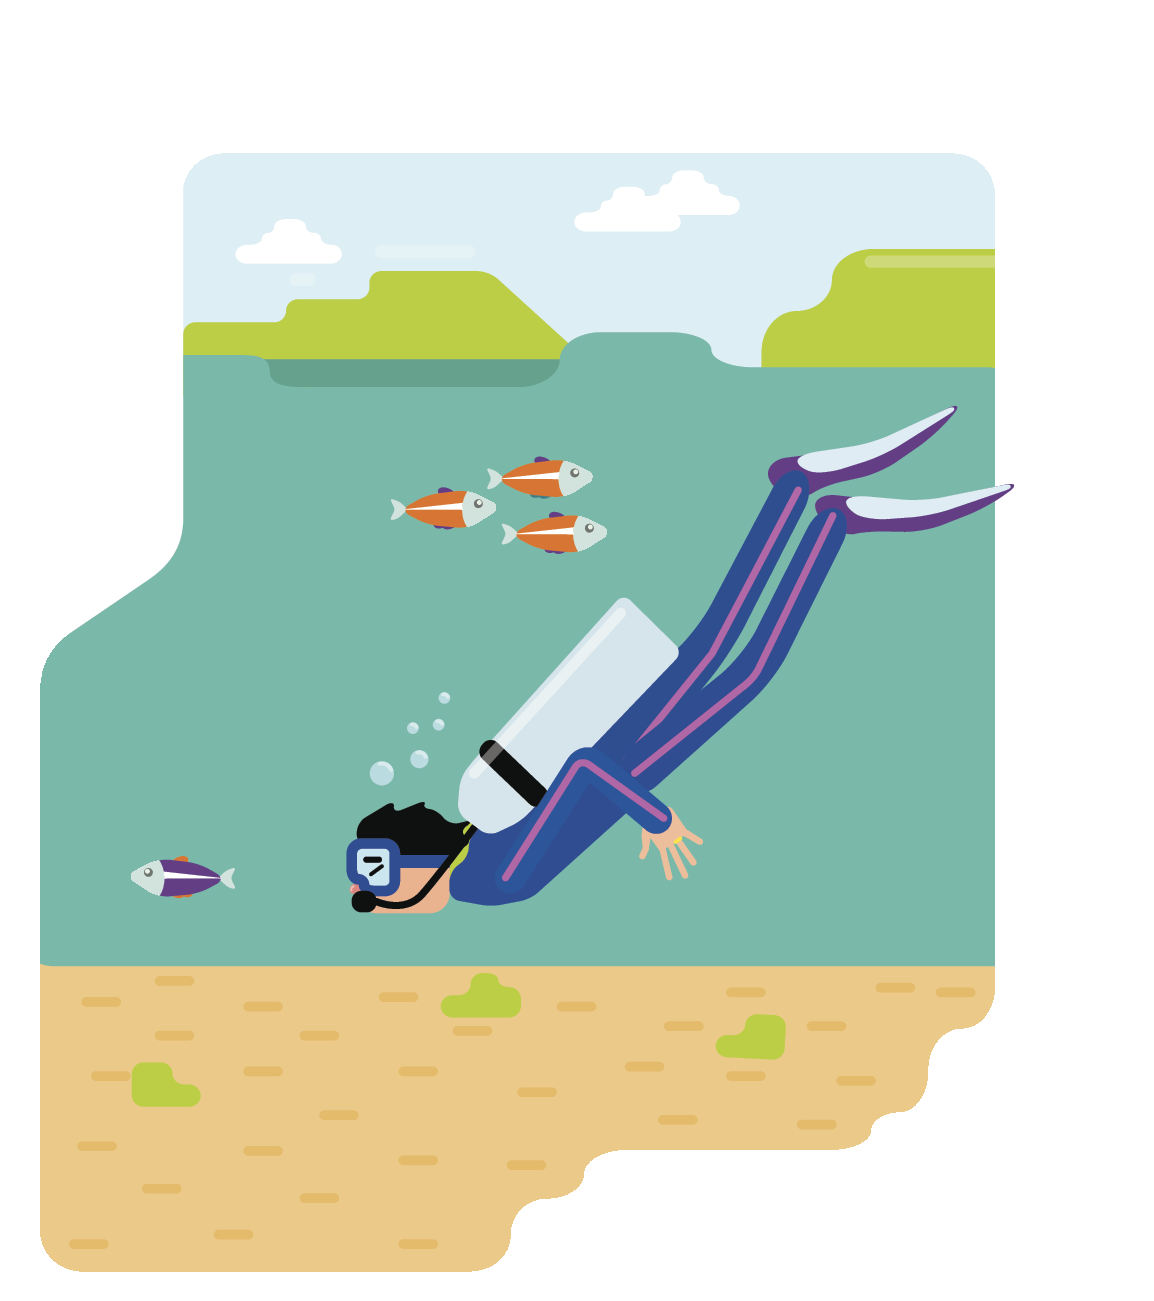 Ilustração. Um homem com roupa de mergulho submerso no mar, nadando com os peixes. Ele usa máscara e carrega um cilindro de oxigênio.